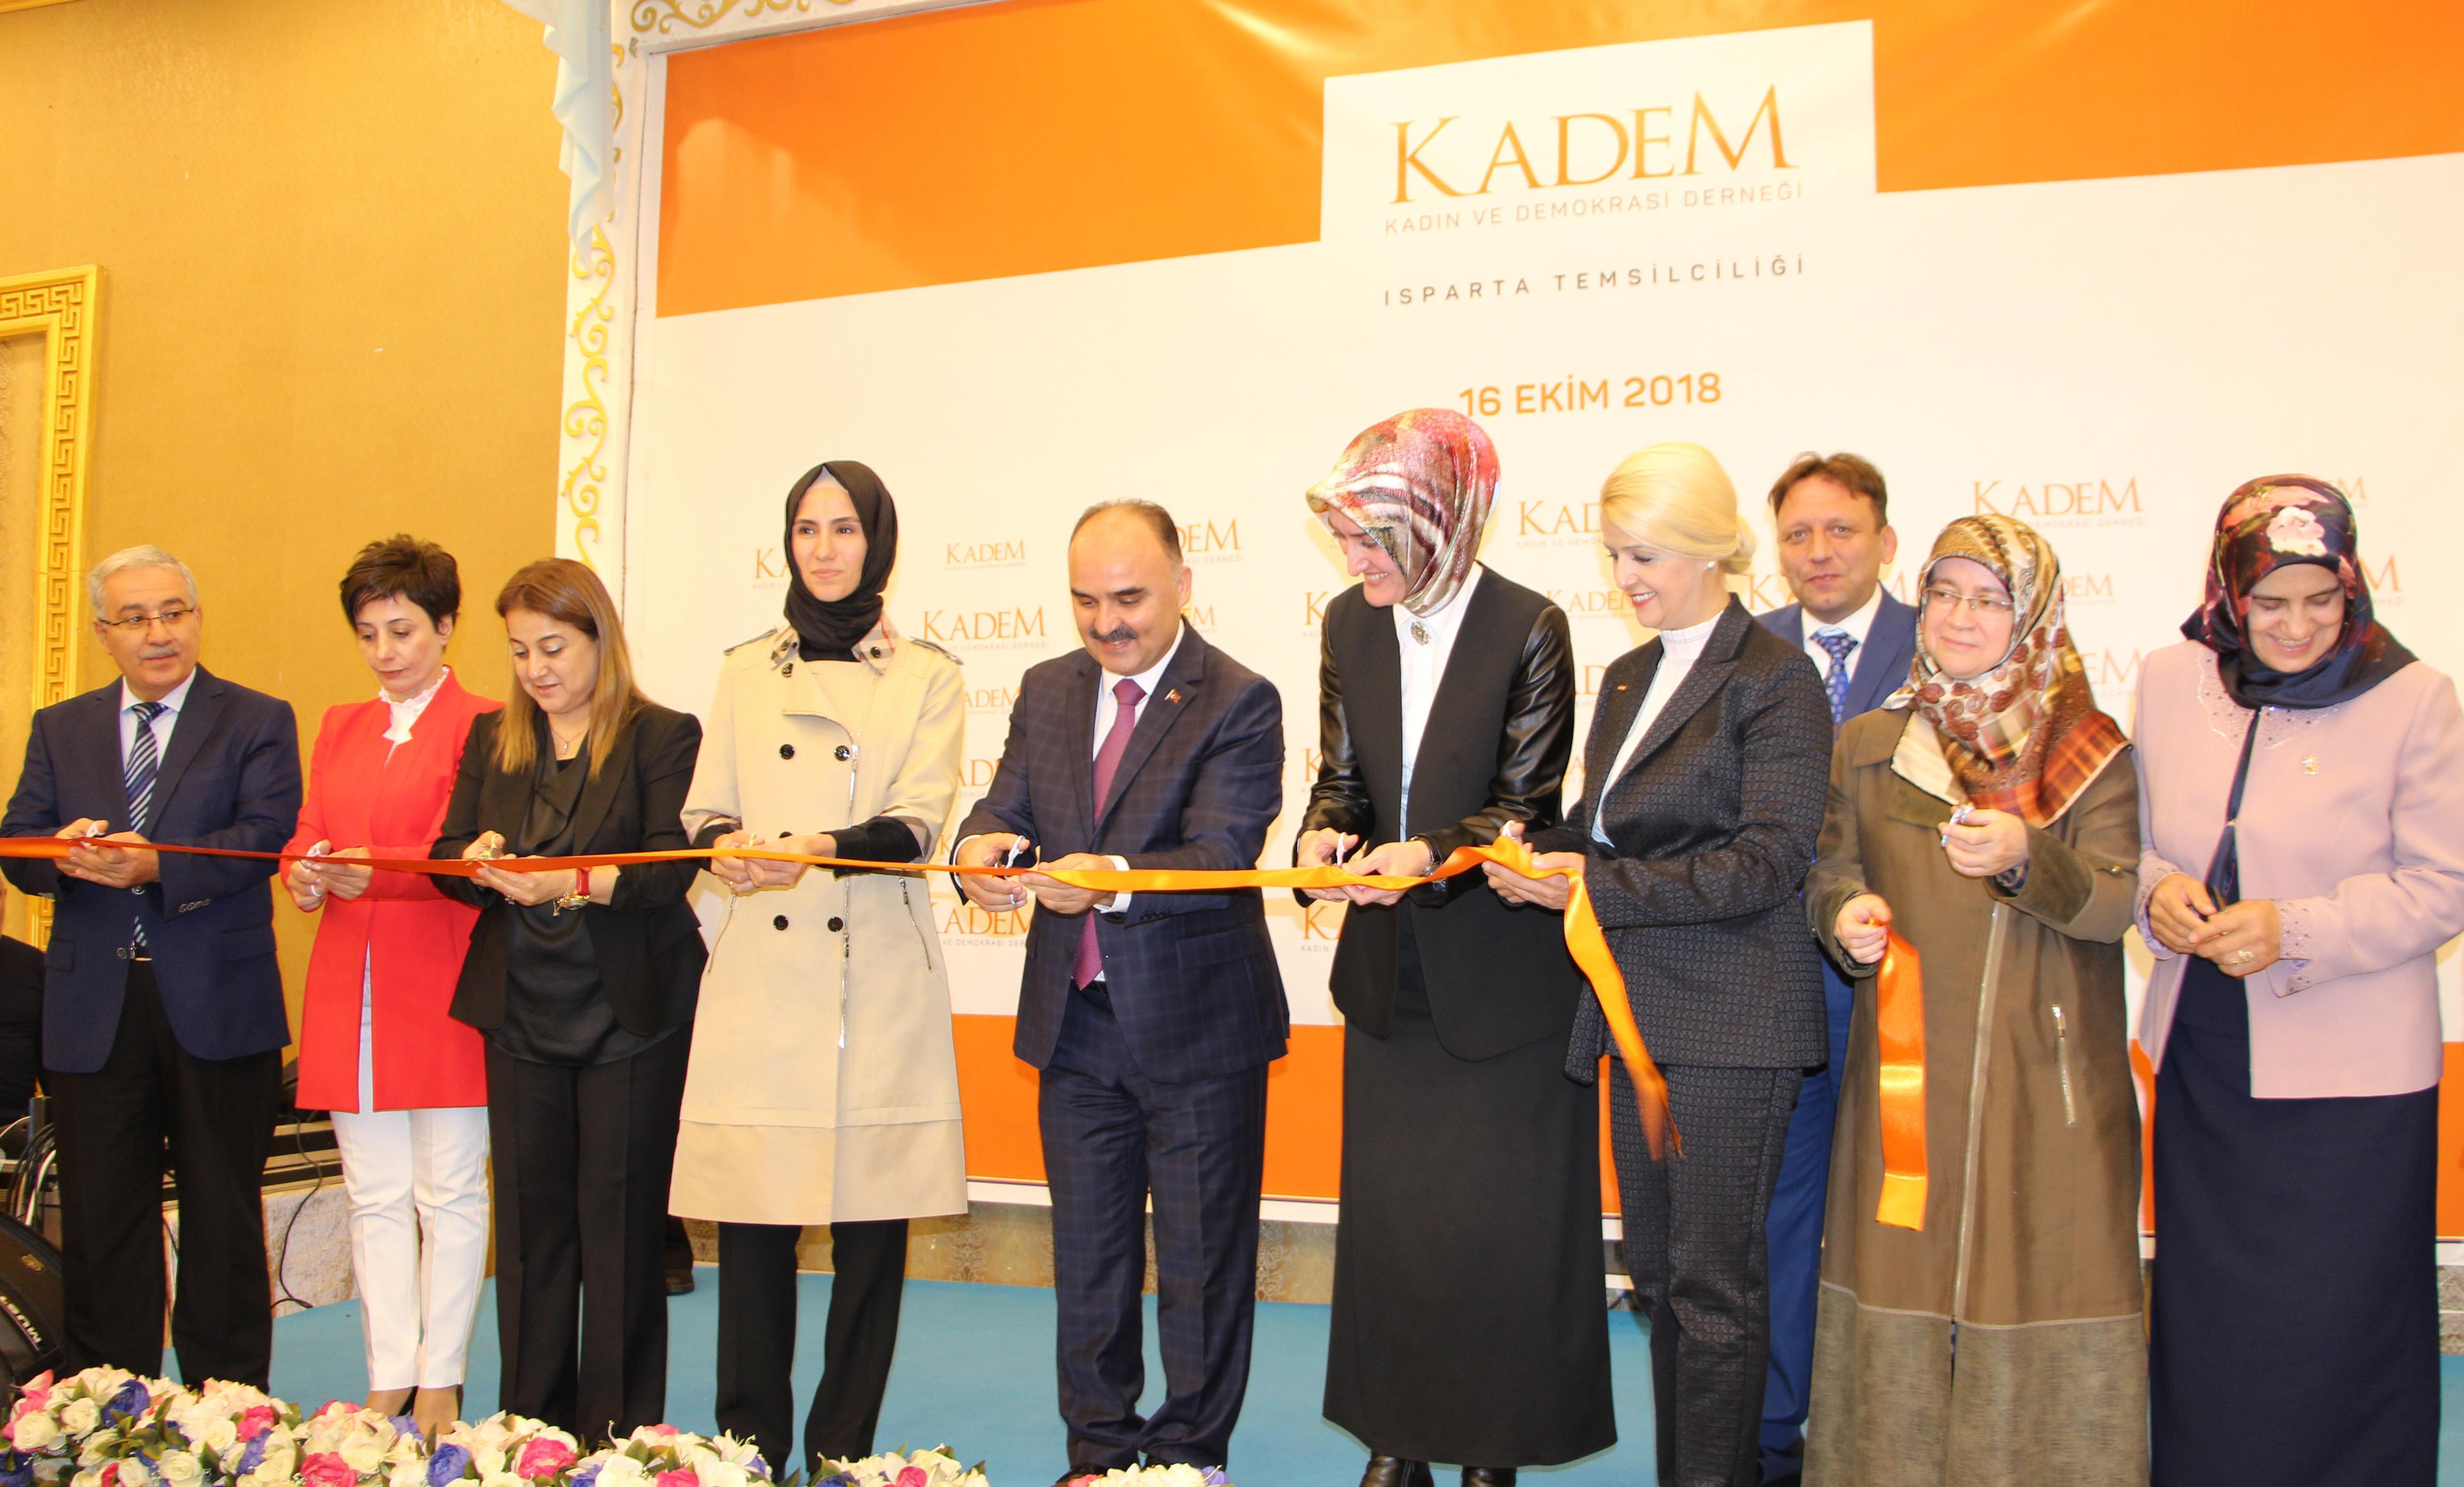 KADEM Isparta şubesi açıldı